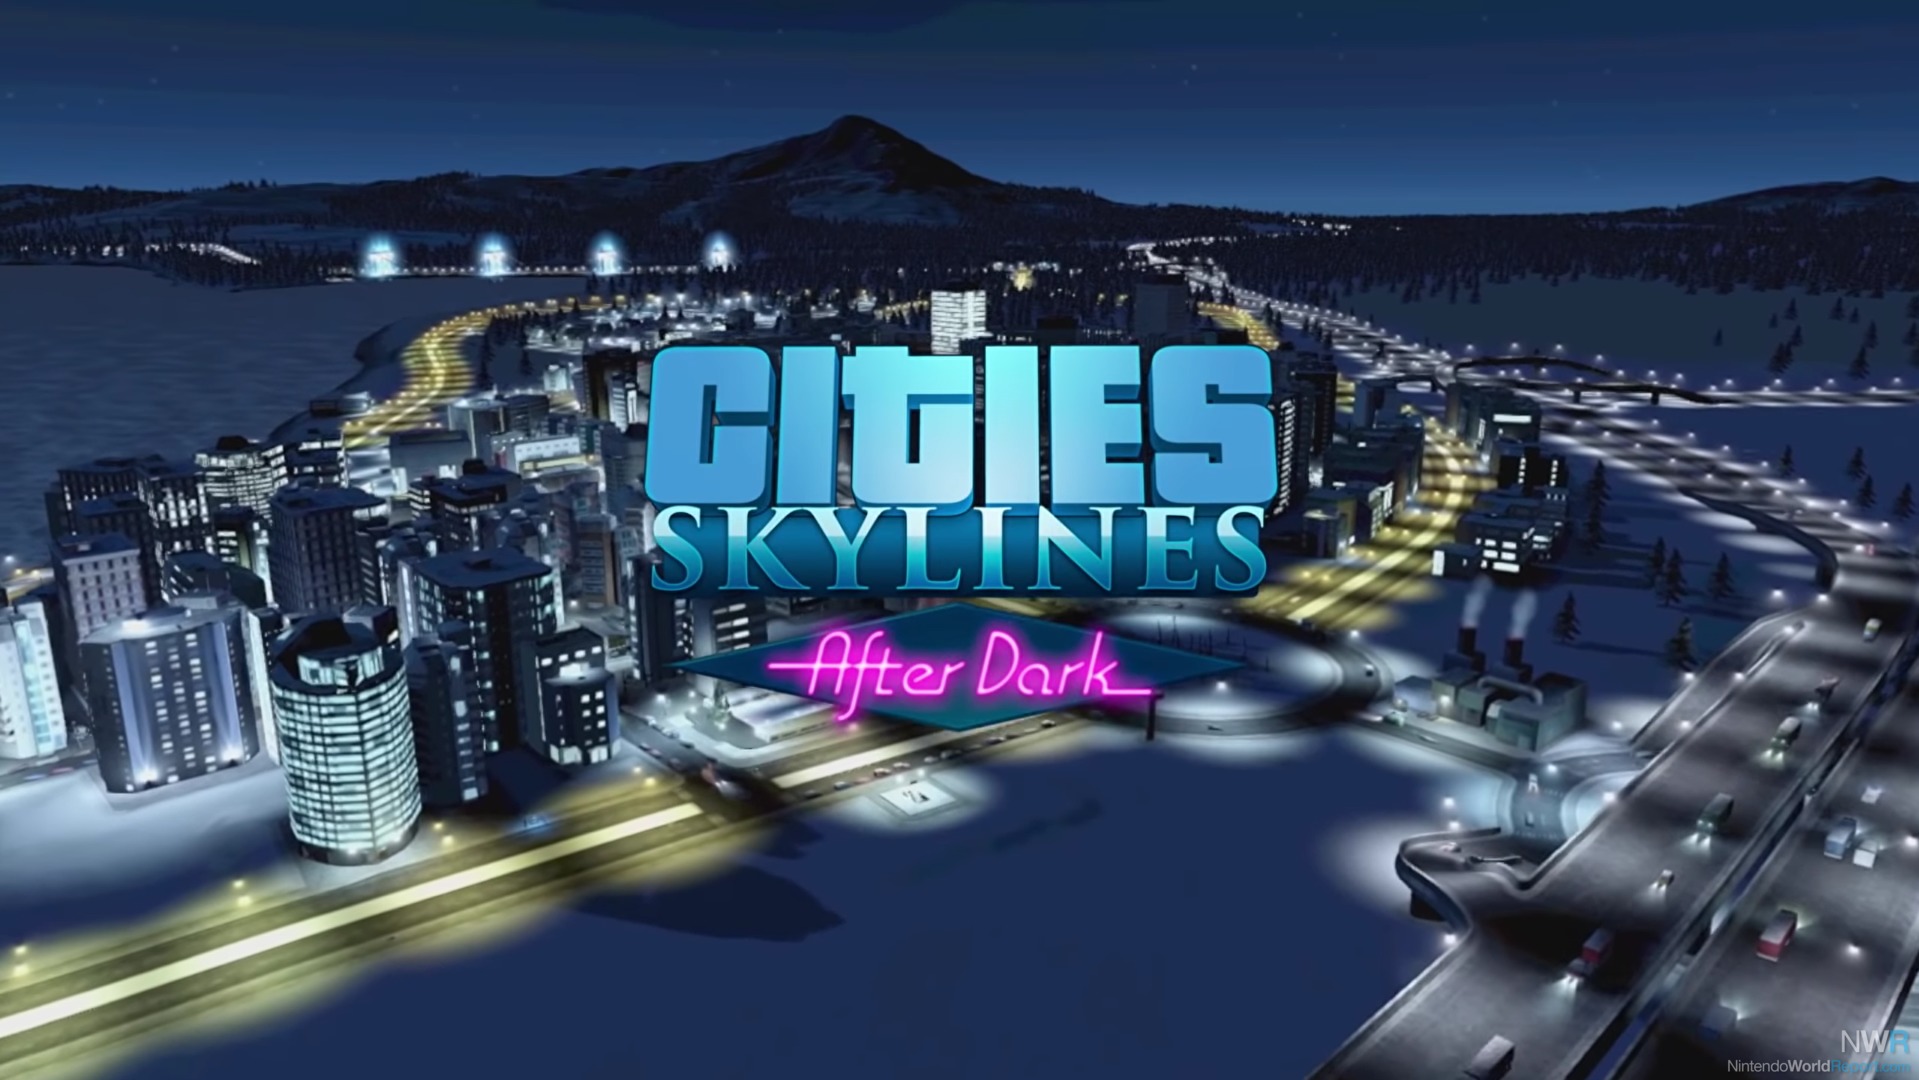 Skyline nintendo. Cities: Skylines - Nintendo Switch™ Edition. Сити Скайлайн Нинтендо свитч. Cities Skylines Nintendo Switch. Сити Скайлайн стиль Modern City Center.